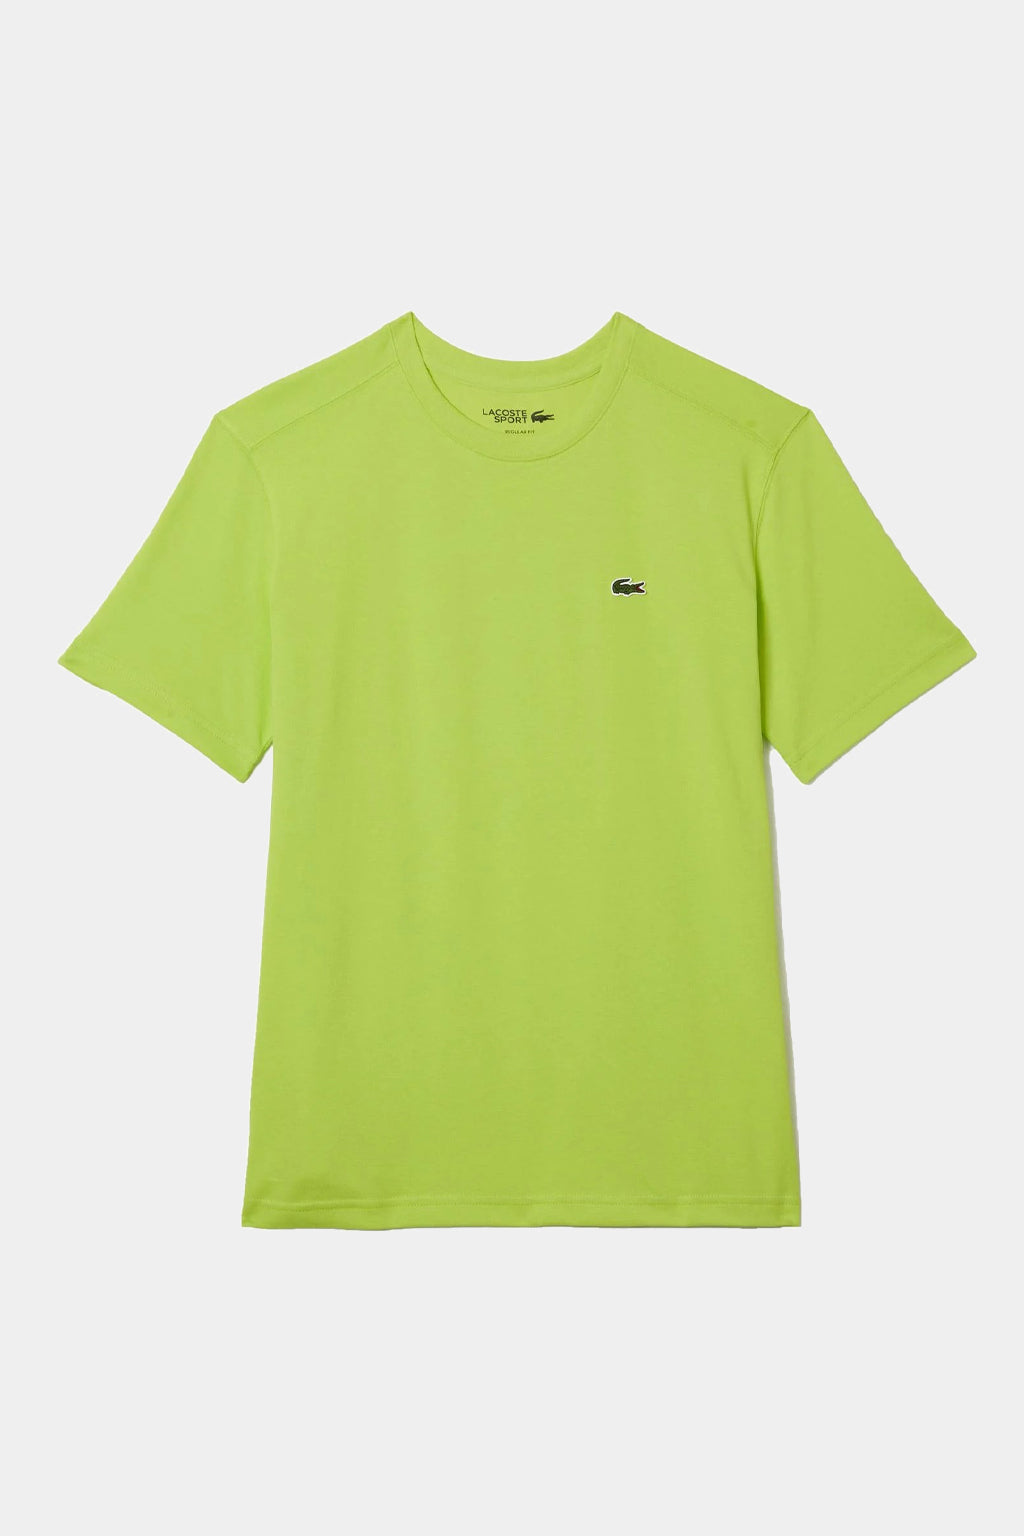 Lacoste - Sport Men's T-Shirt